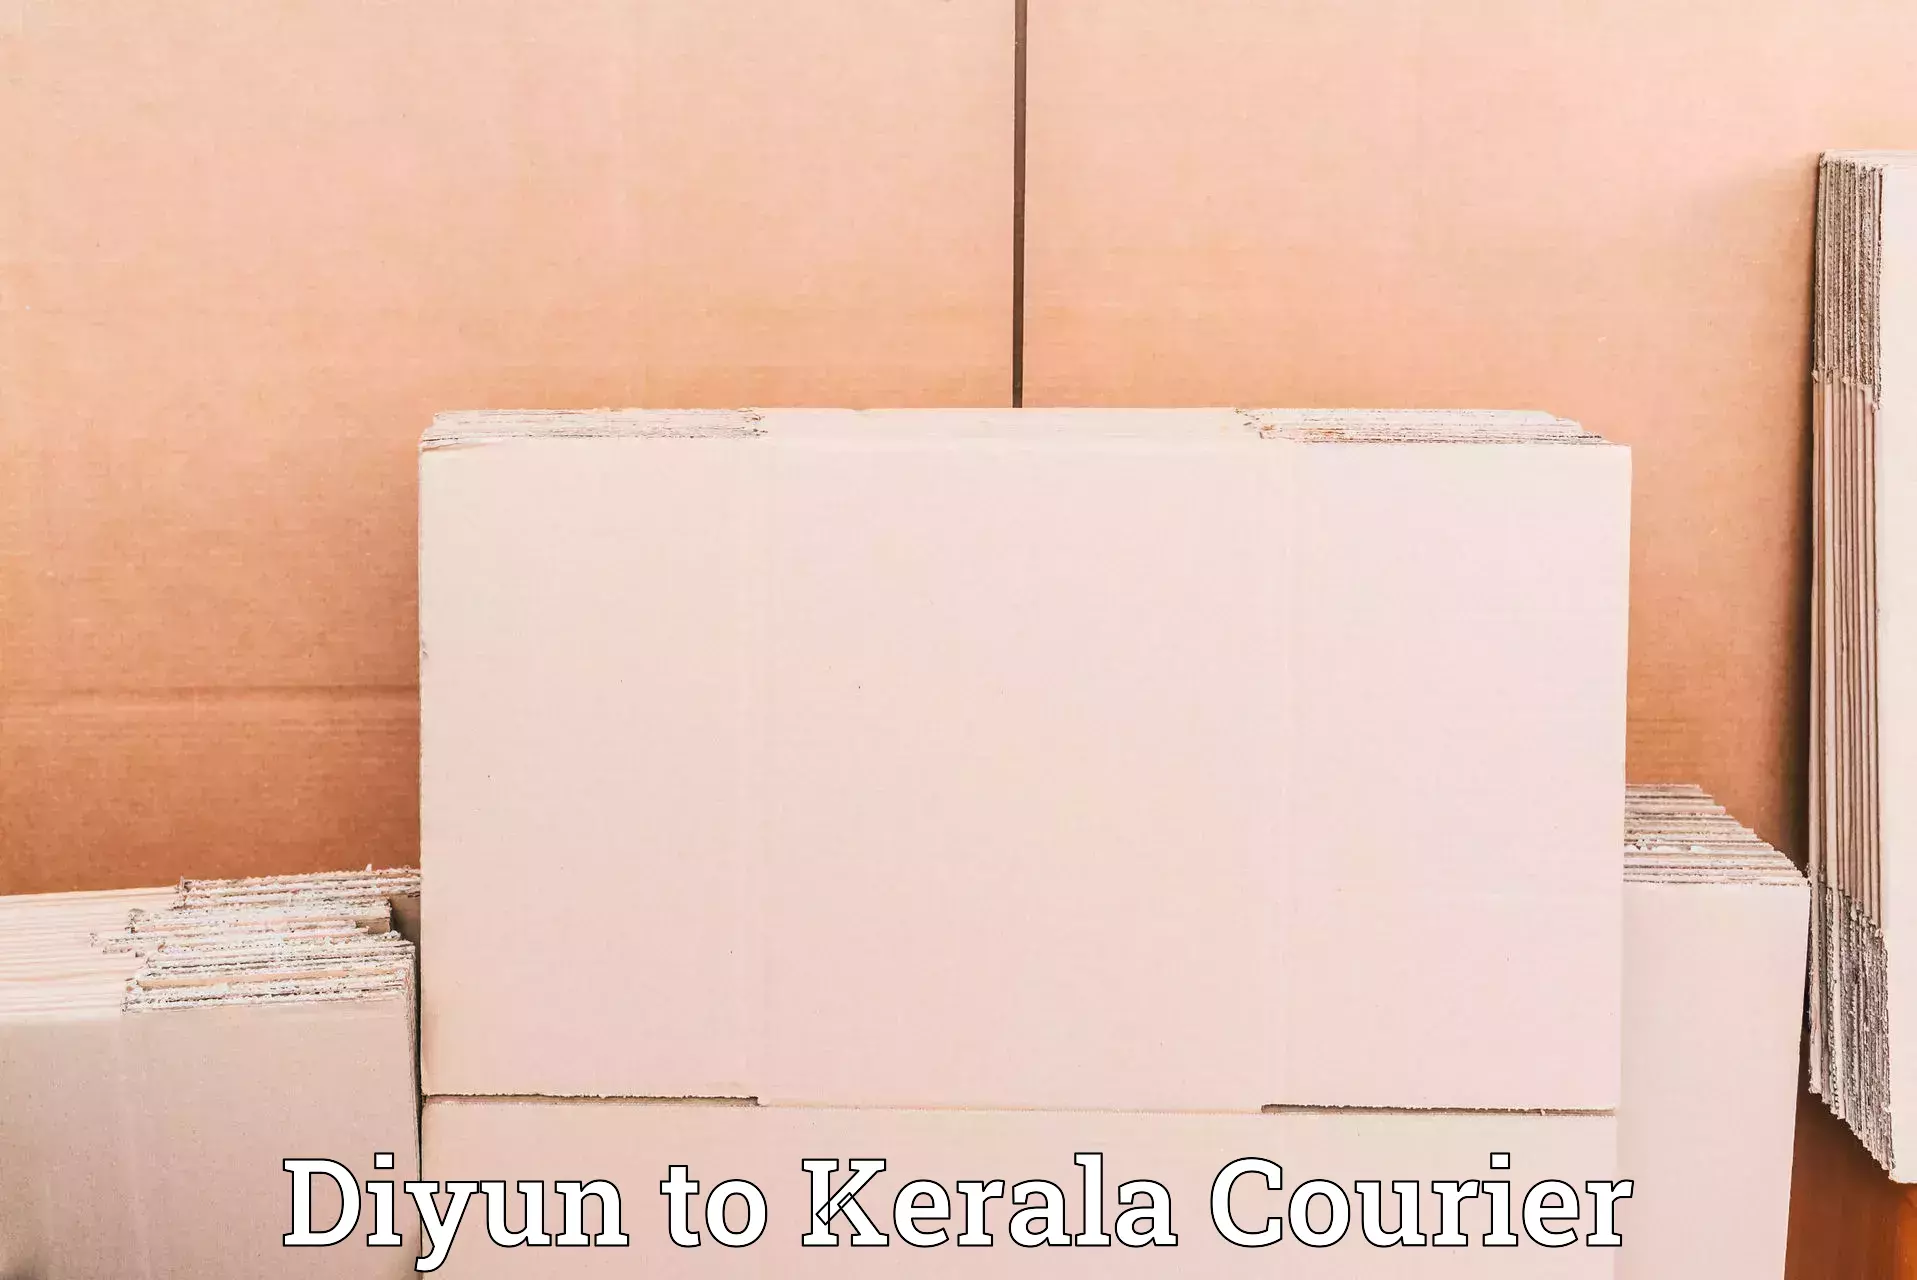 High-priority parcel service Diyun to Kerala